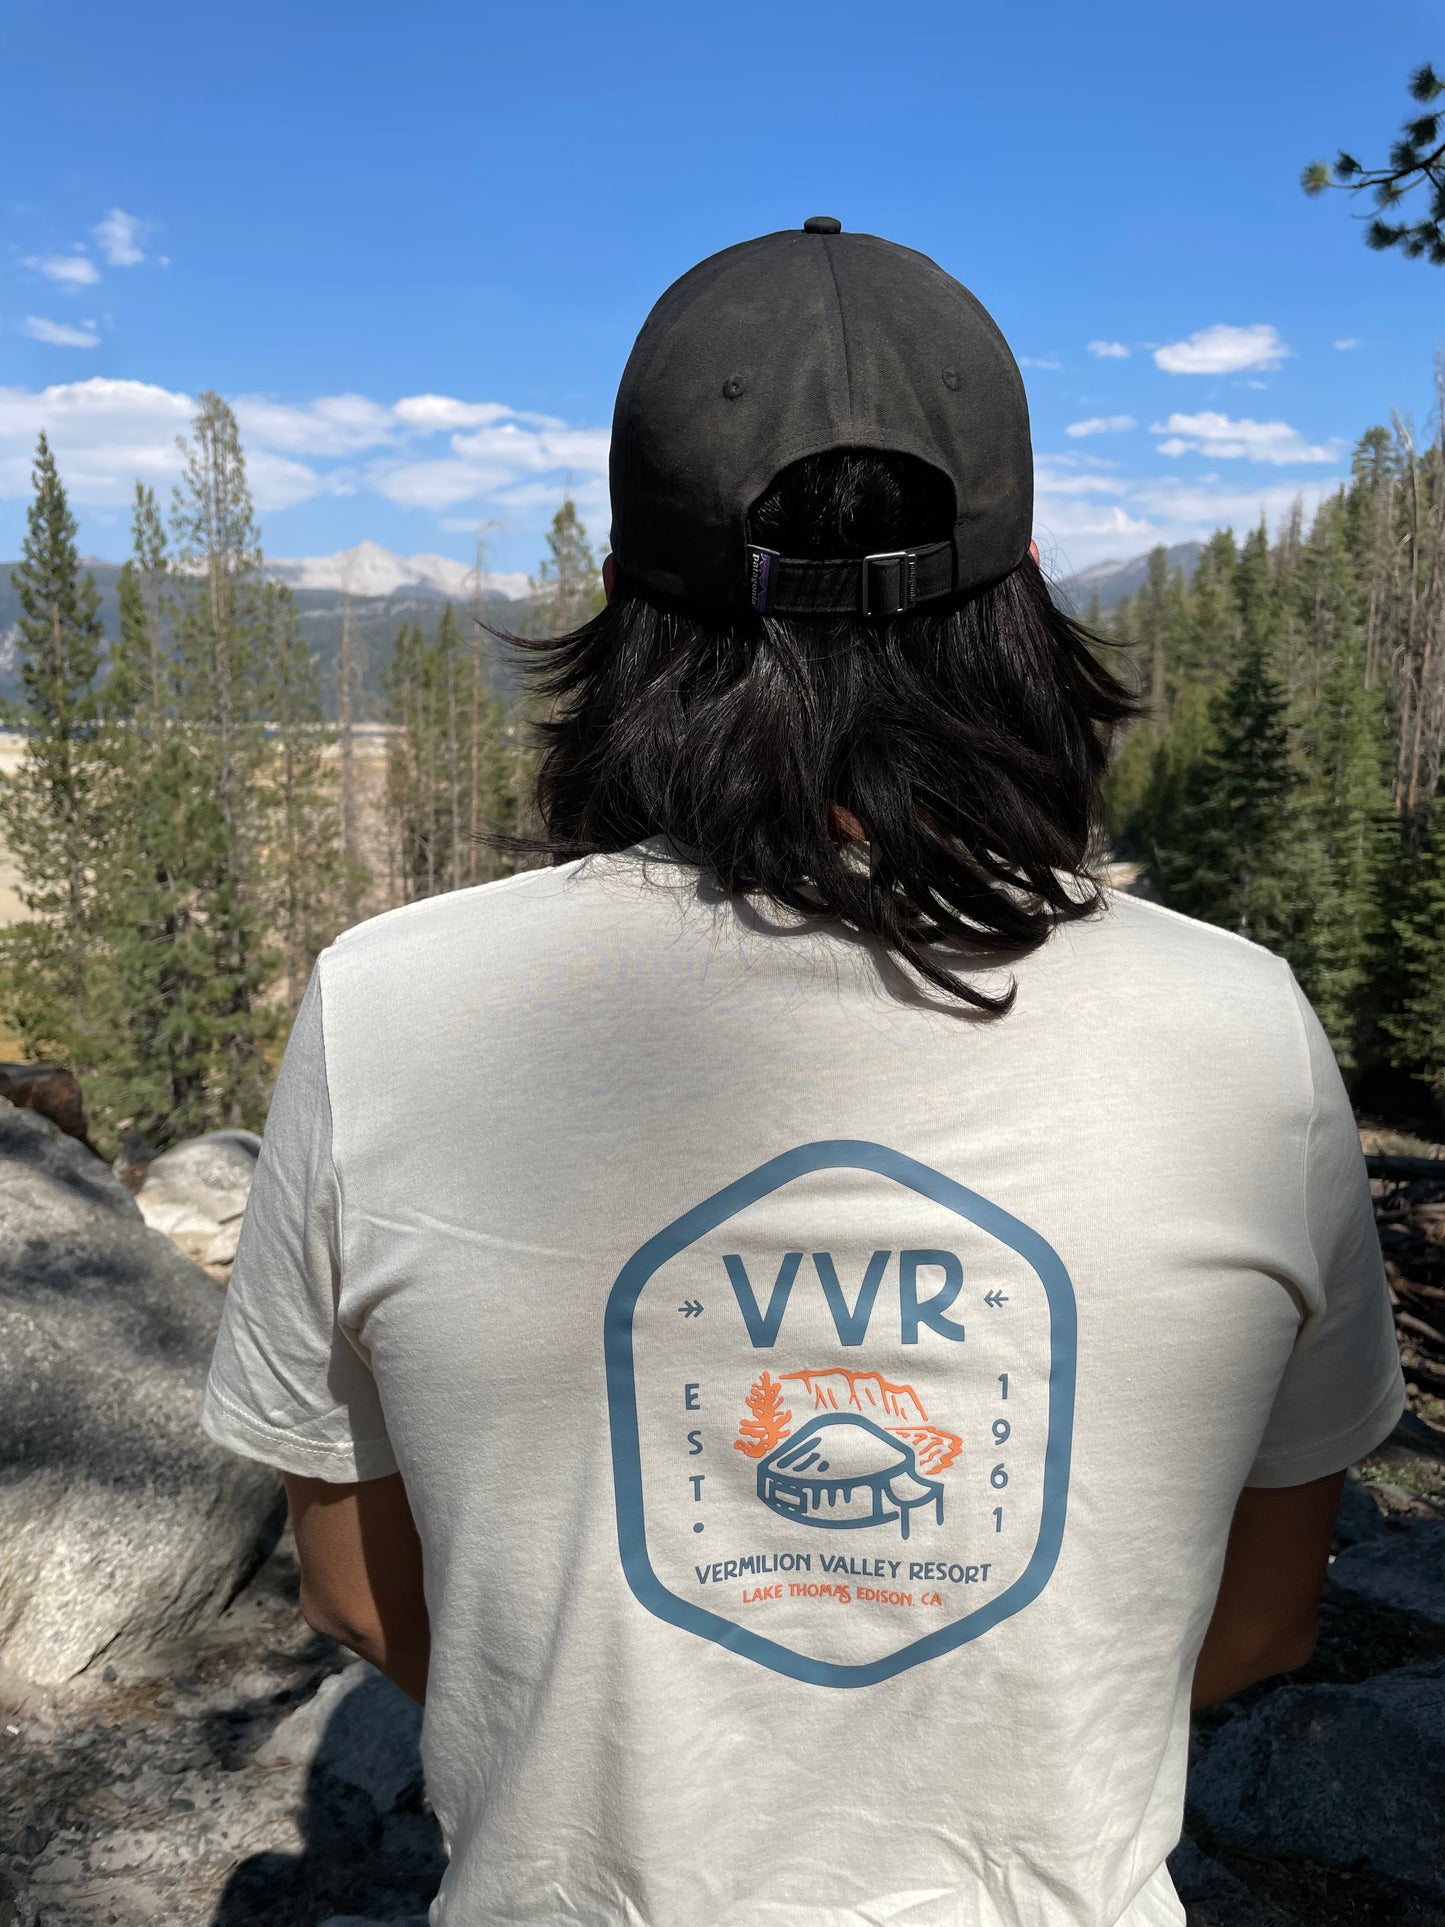 VVR Pocket Logo T-Shirt - Cream